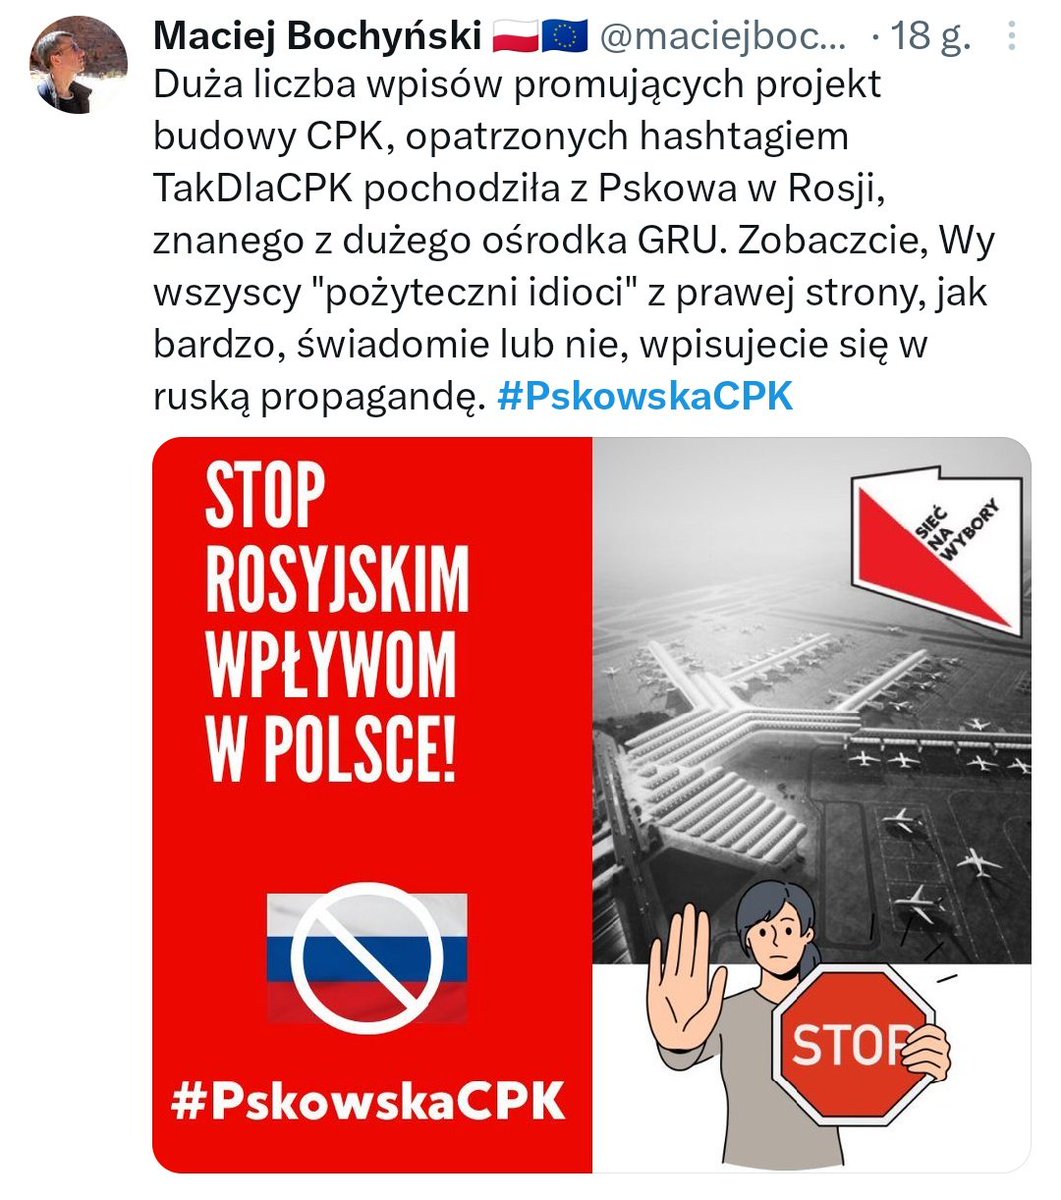 Jeżeli chcecie zobaczyć sobie jak działają sekty wierzące w najbardziej odklejone teorie spiskowe to zapraszam pod hashtag #PskowskaCPK. Świadomi i racjonalni Europejczycy, Giertych ich mać.

Tu przykłady tego uśmiechniętego obłędu: